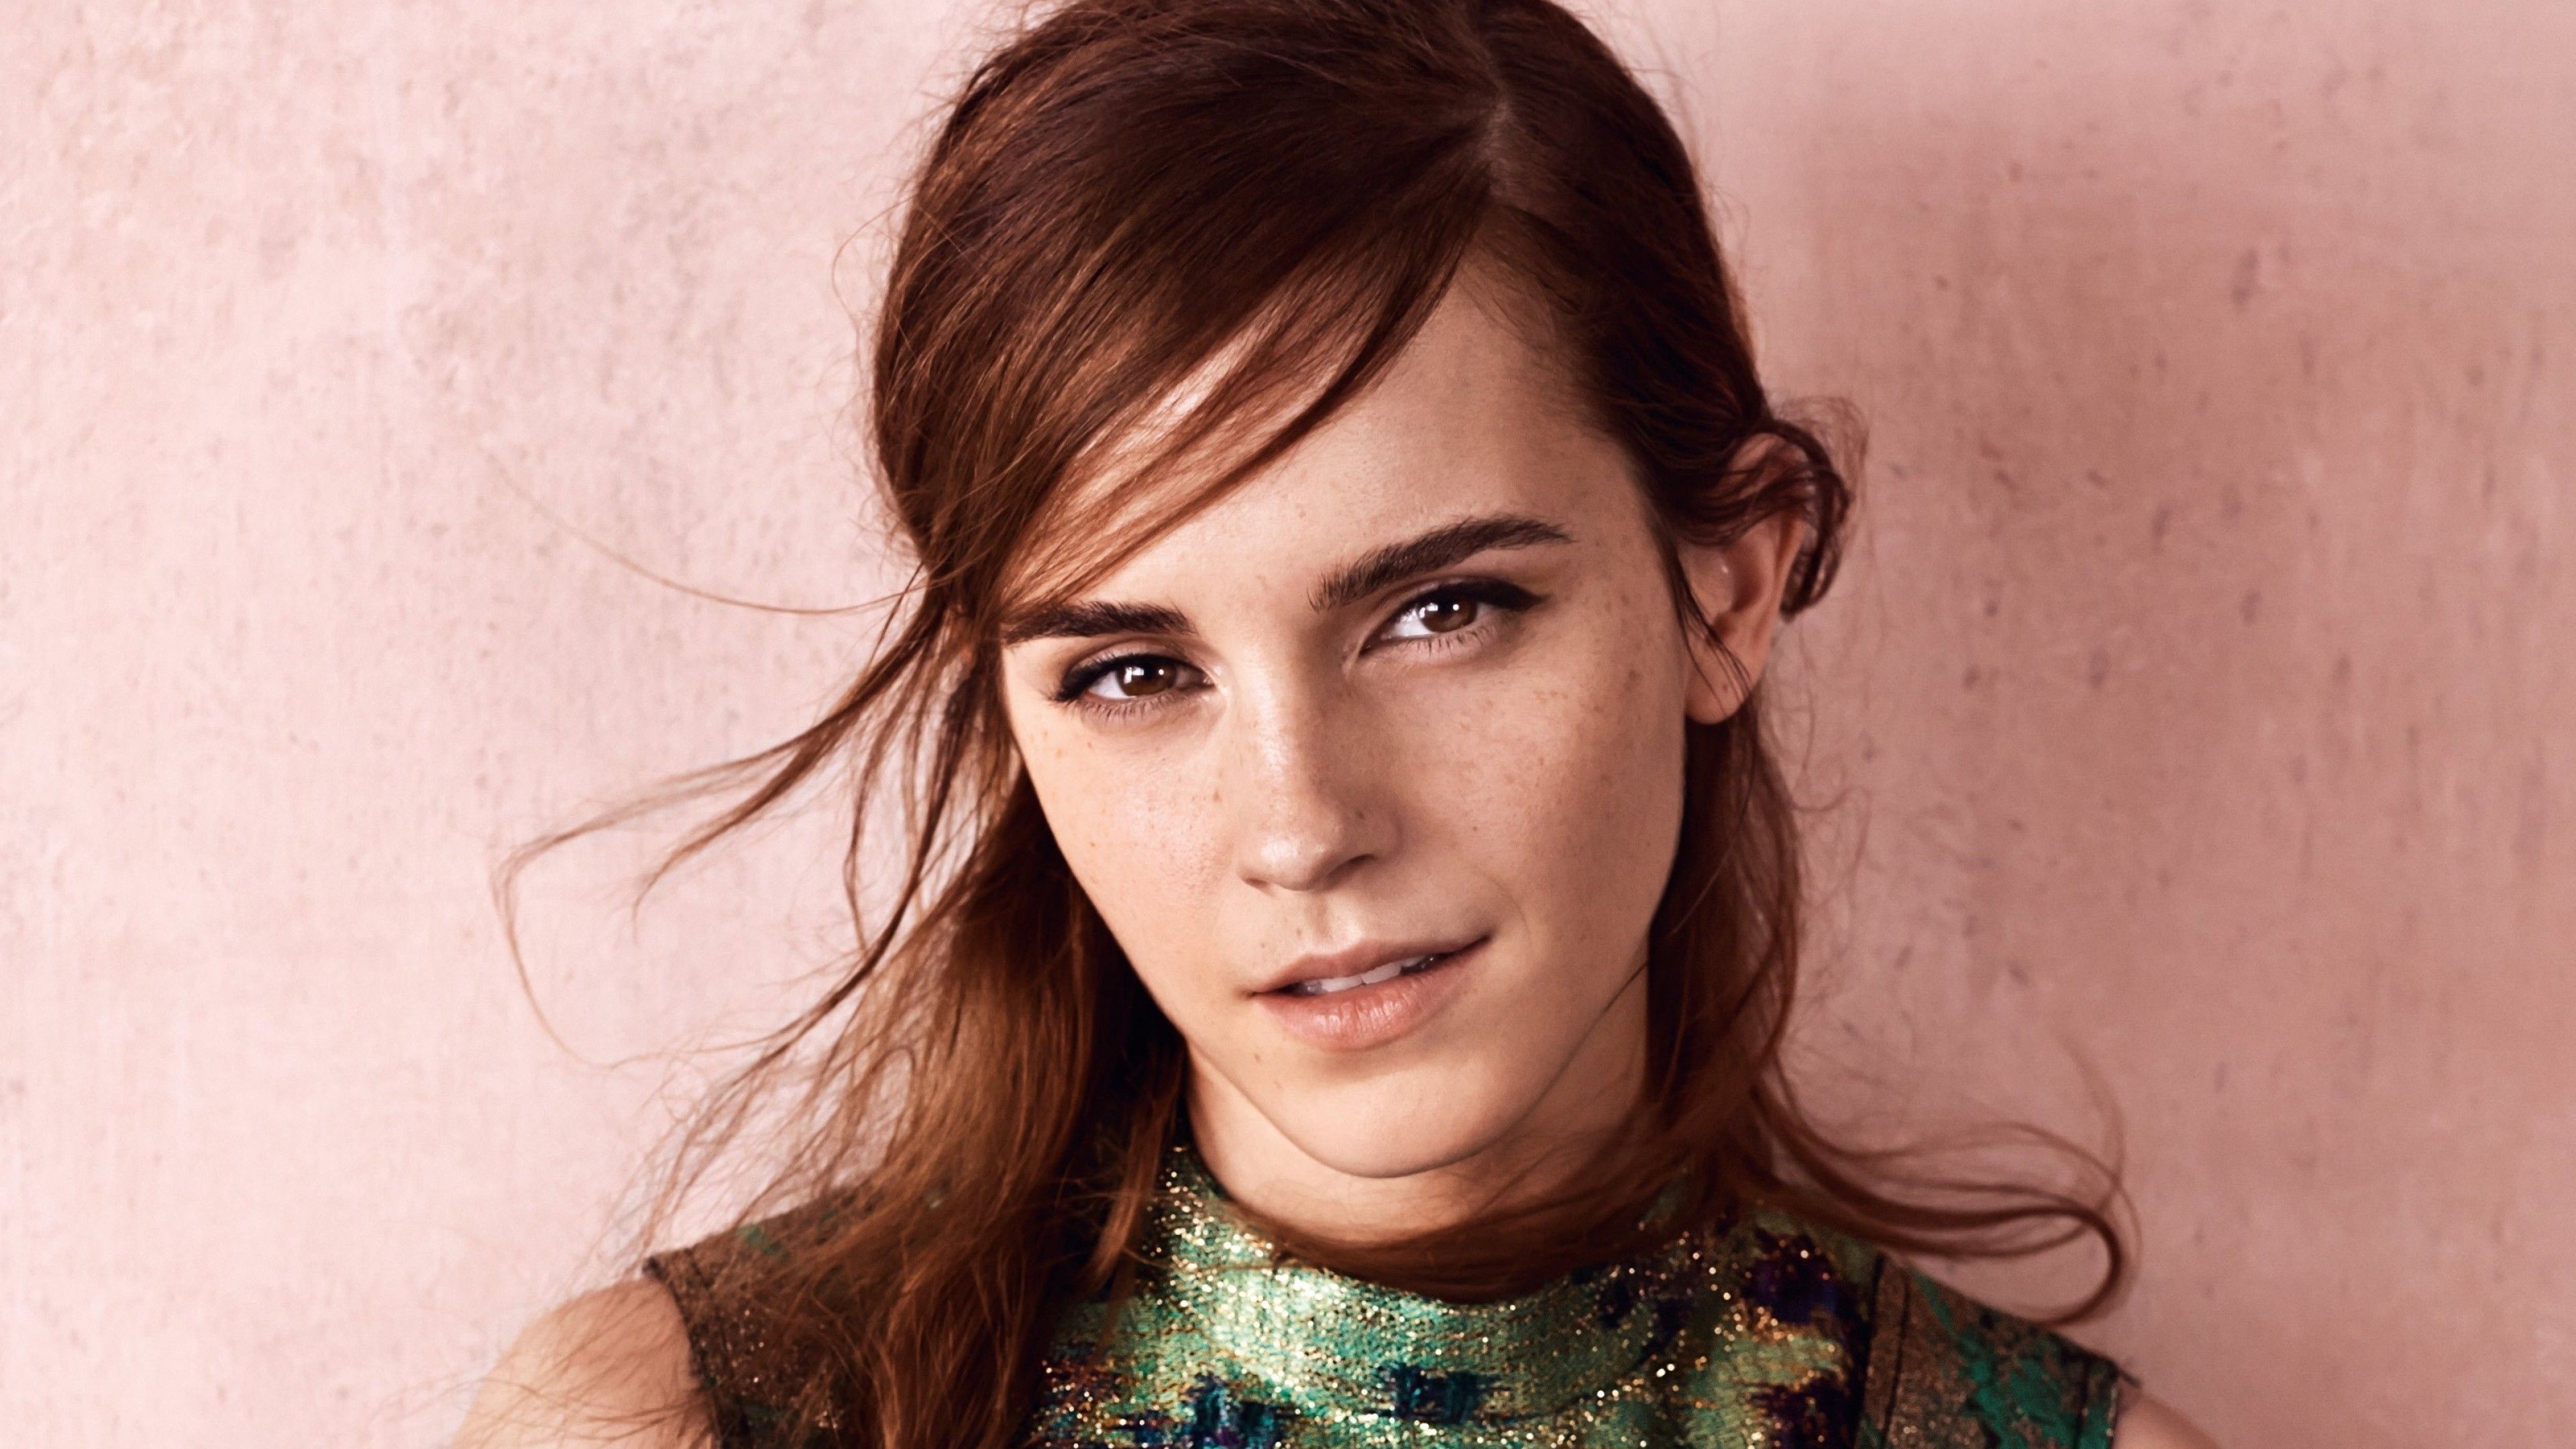 Emma Watson HD Picture Watson Age